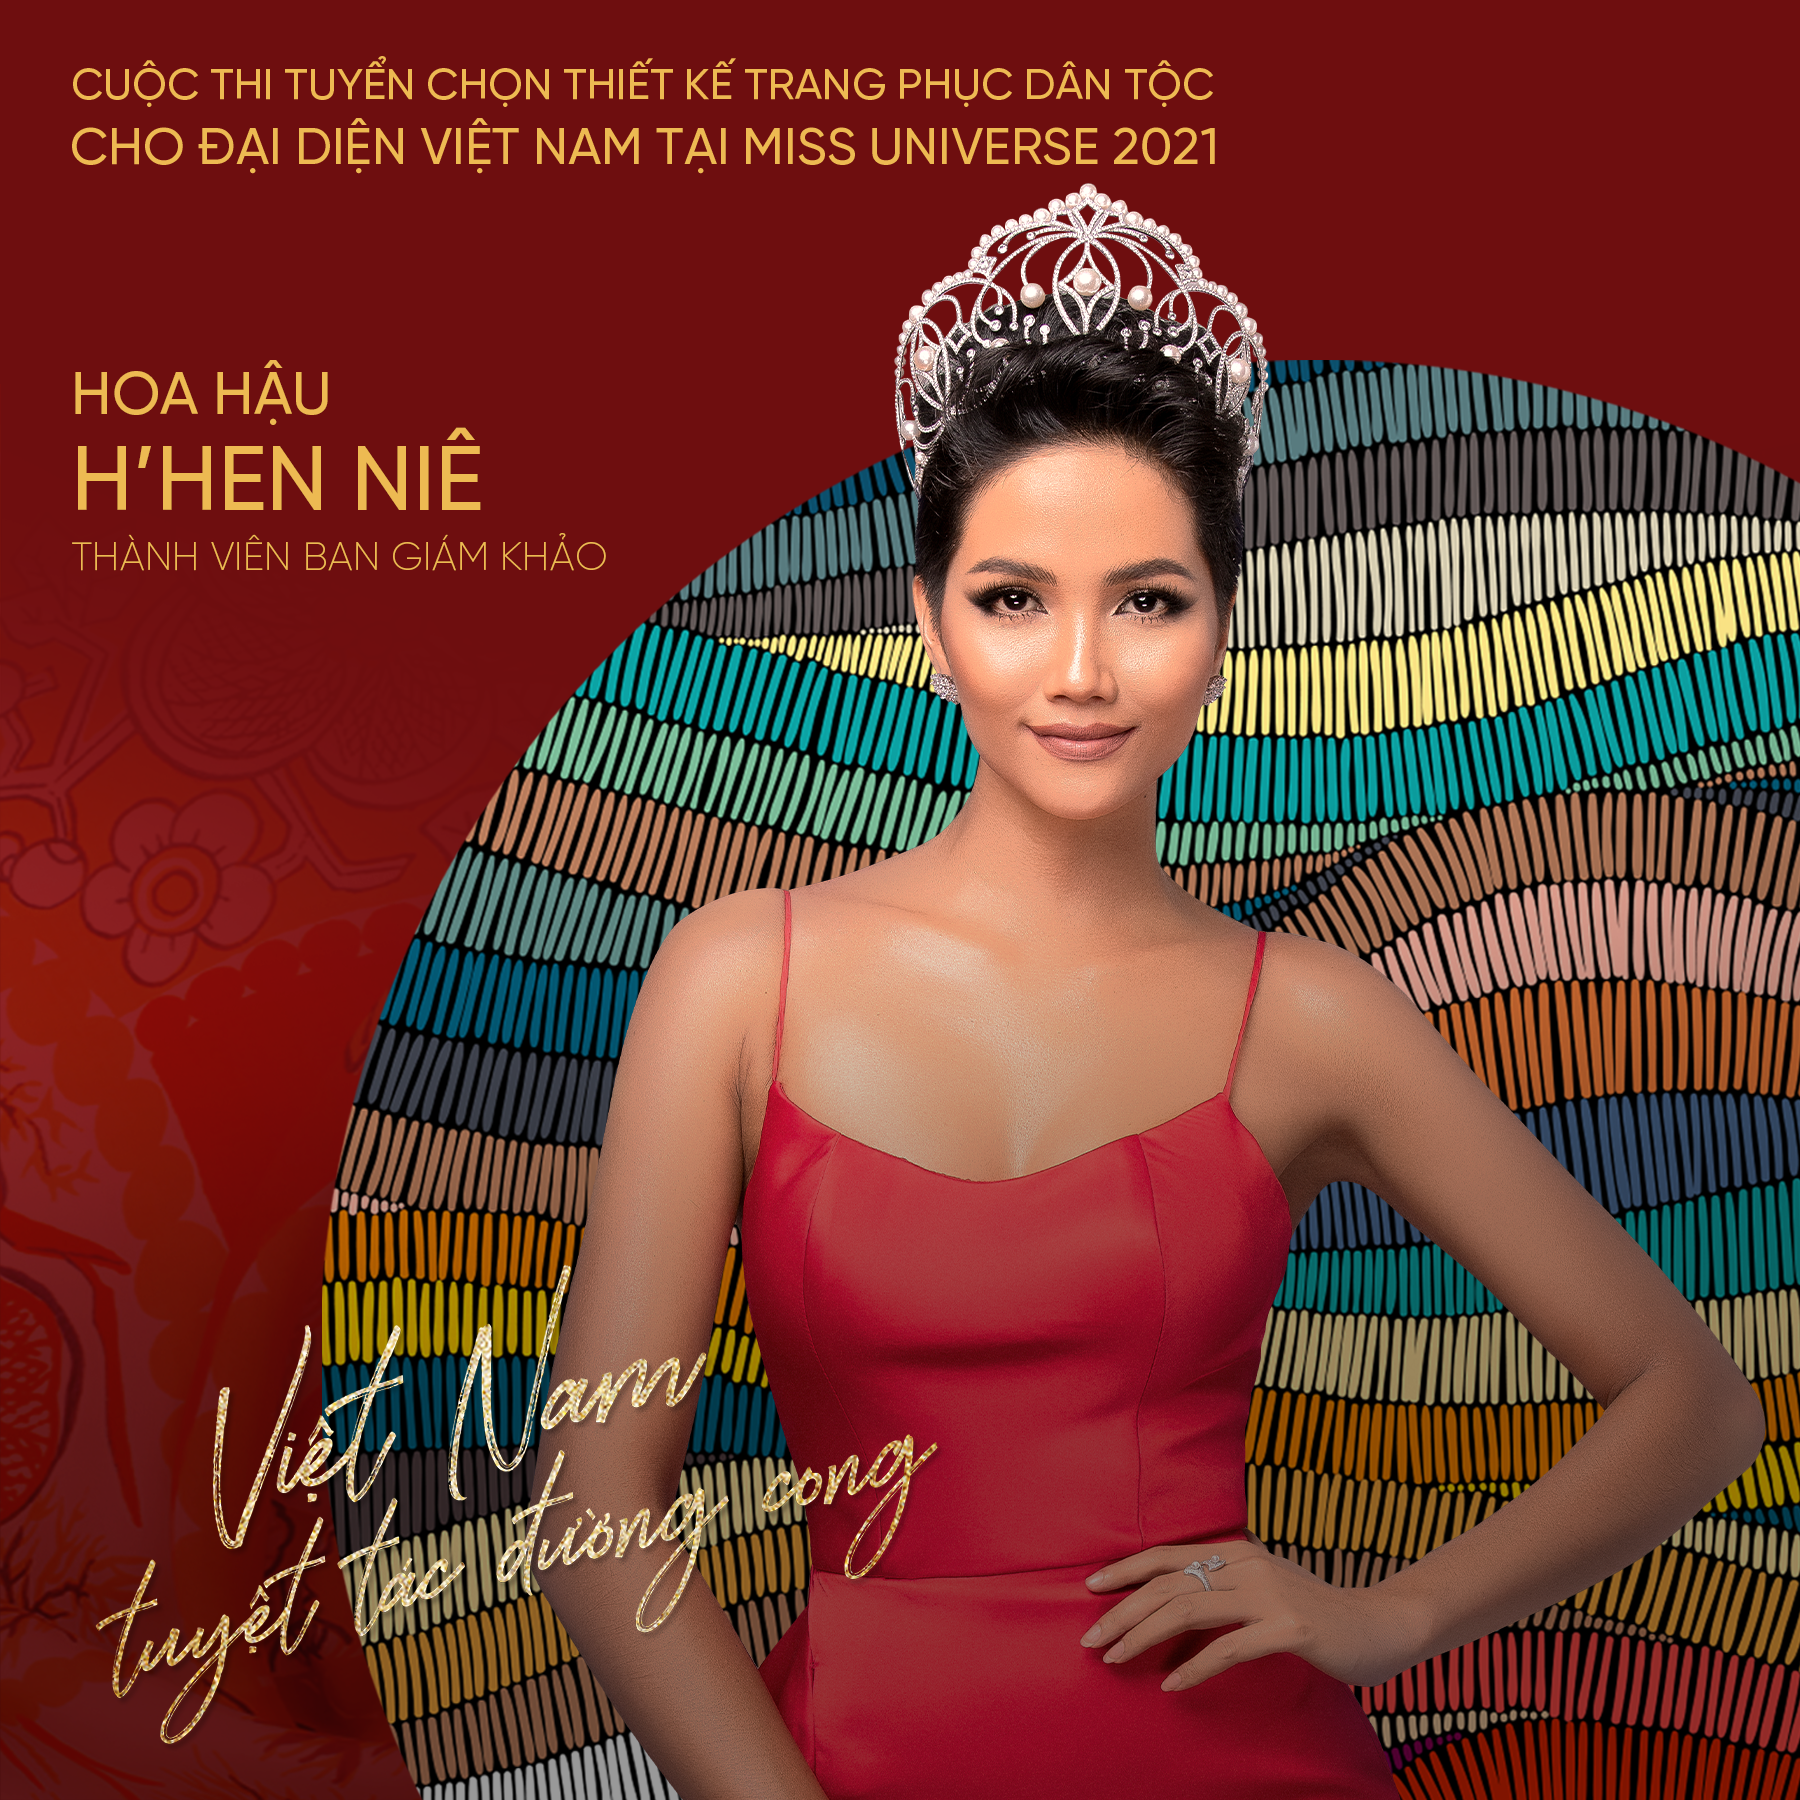 Siêu mẫu Võ Hoàng Yến, Hoa hậu H'Hen Niê giúp Khánh Vân chọn trang phục dân tộc Miss Universe 2020 - Ảnh 1.